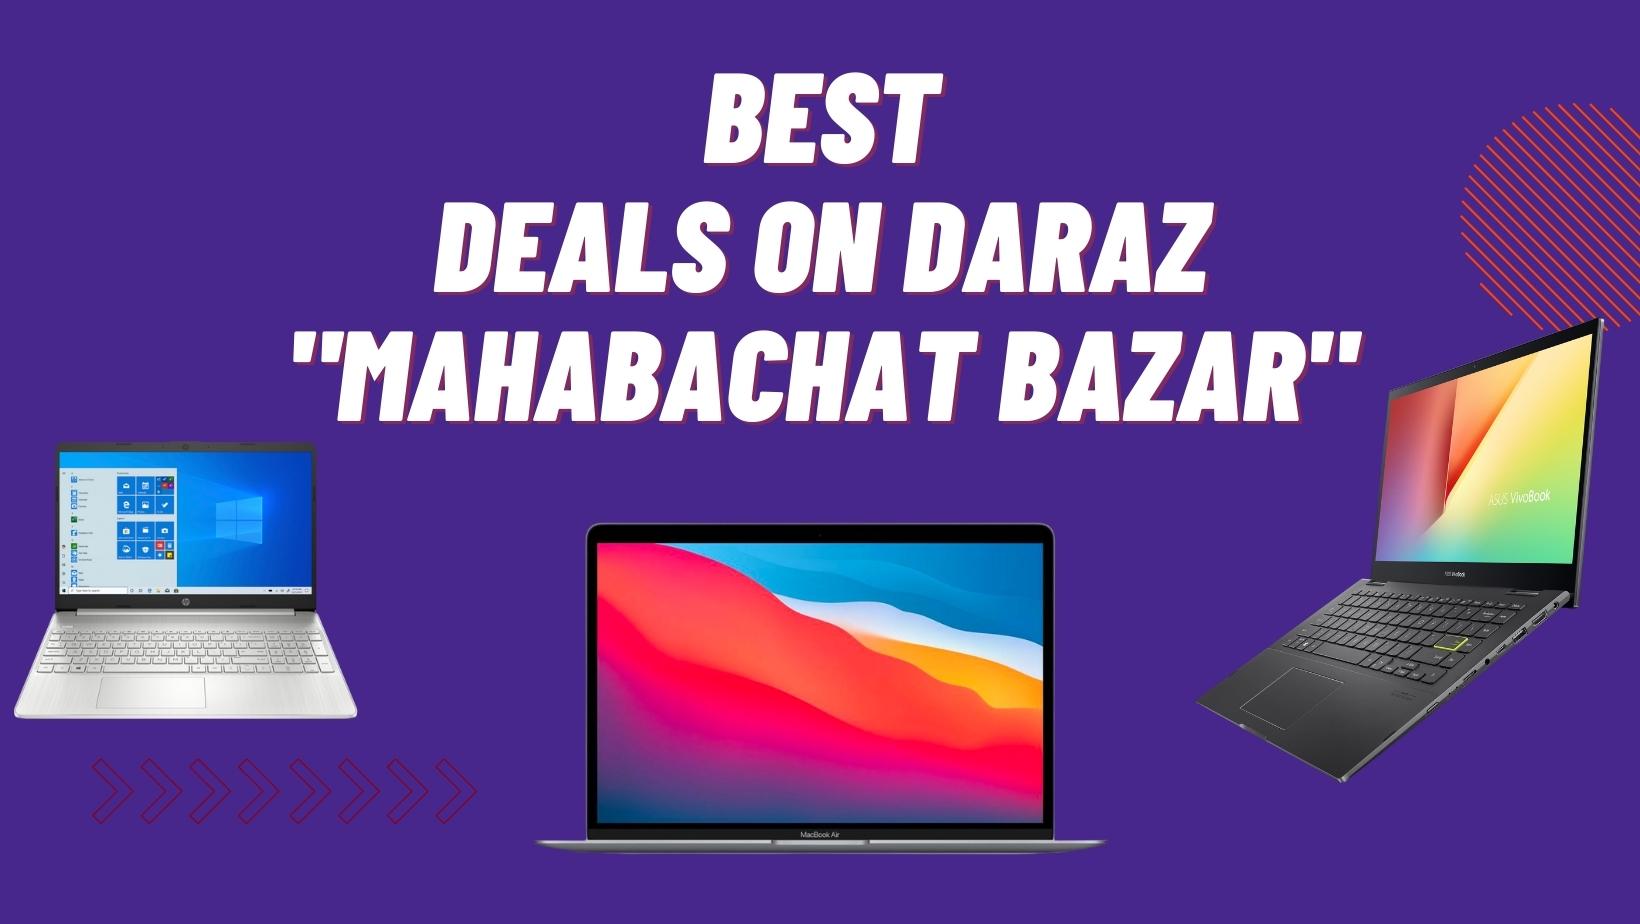 Best Tech Deals on Daraz Mahabachat Bazar